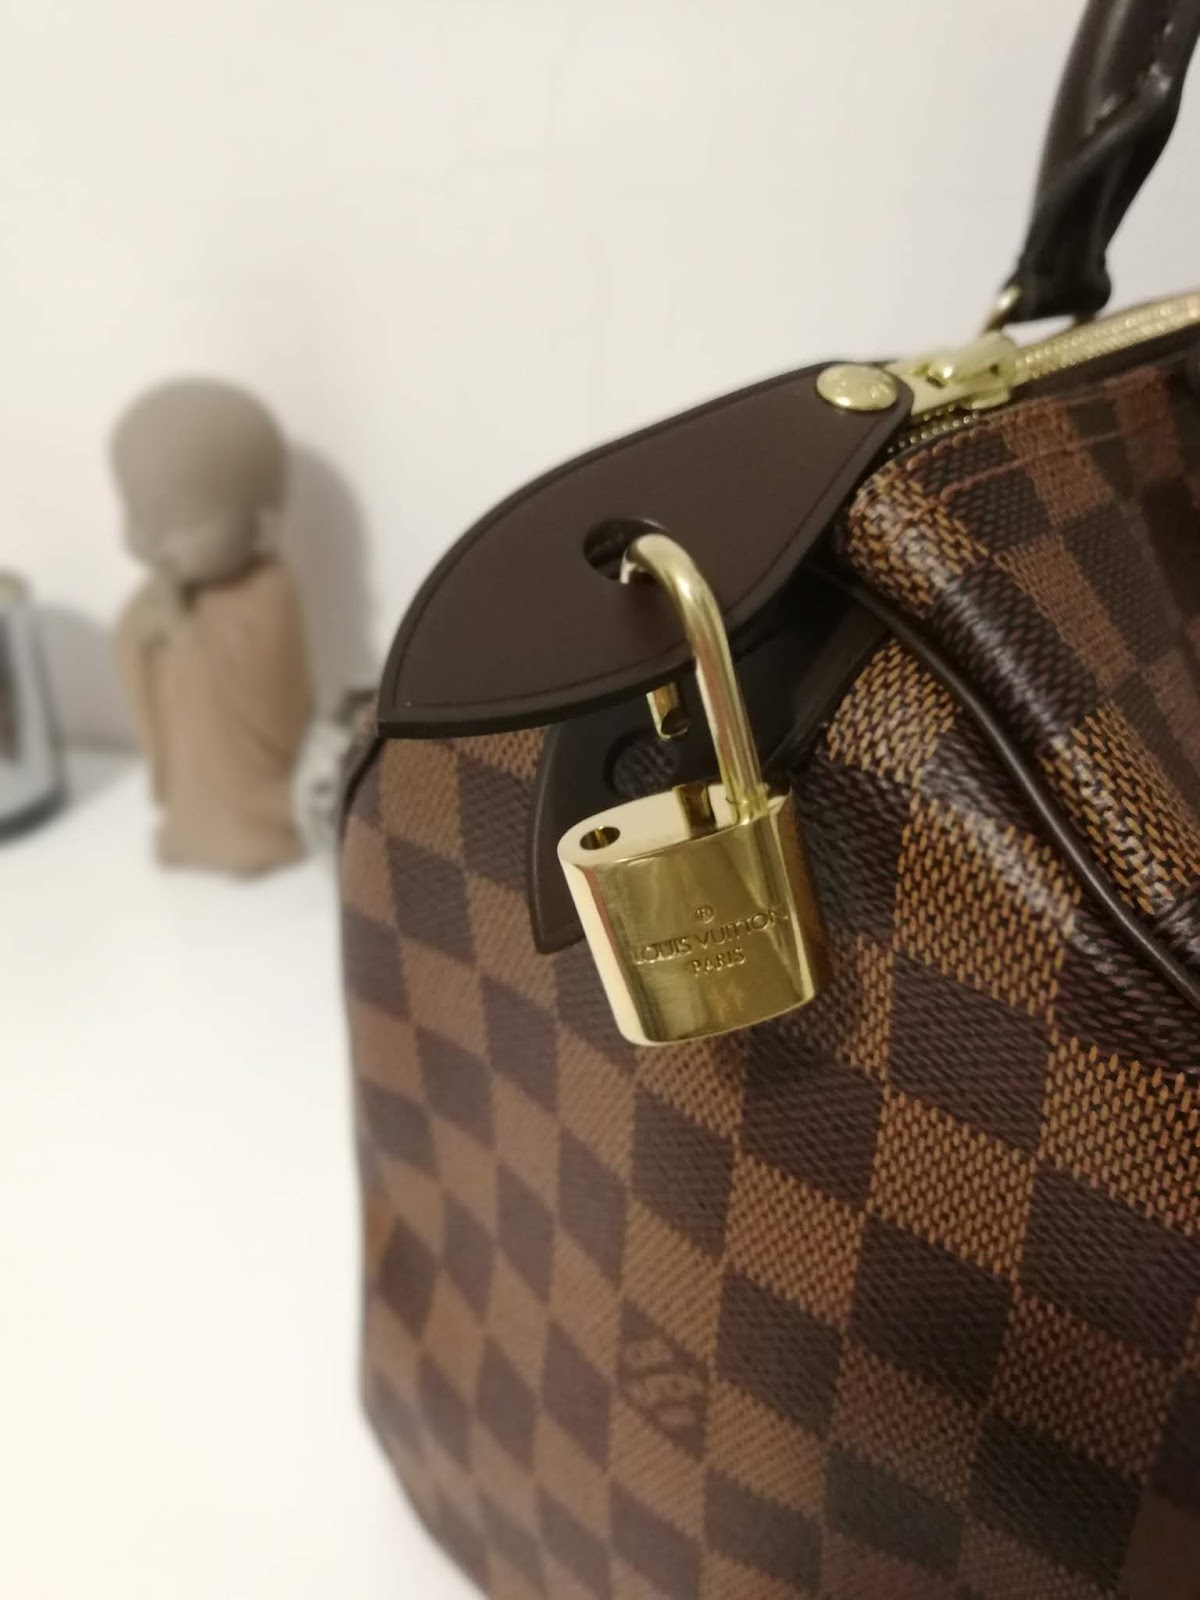 Analizamos el fenómeno del bolso Speedy de Louis Vuitton - Foto 1